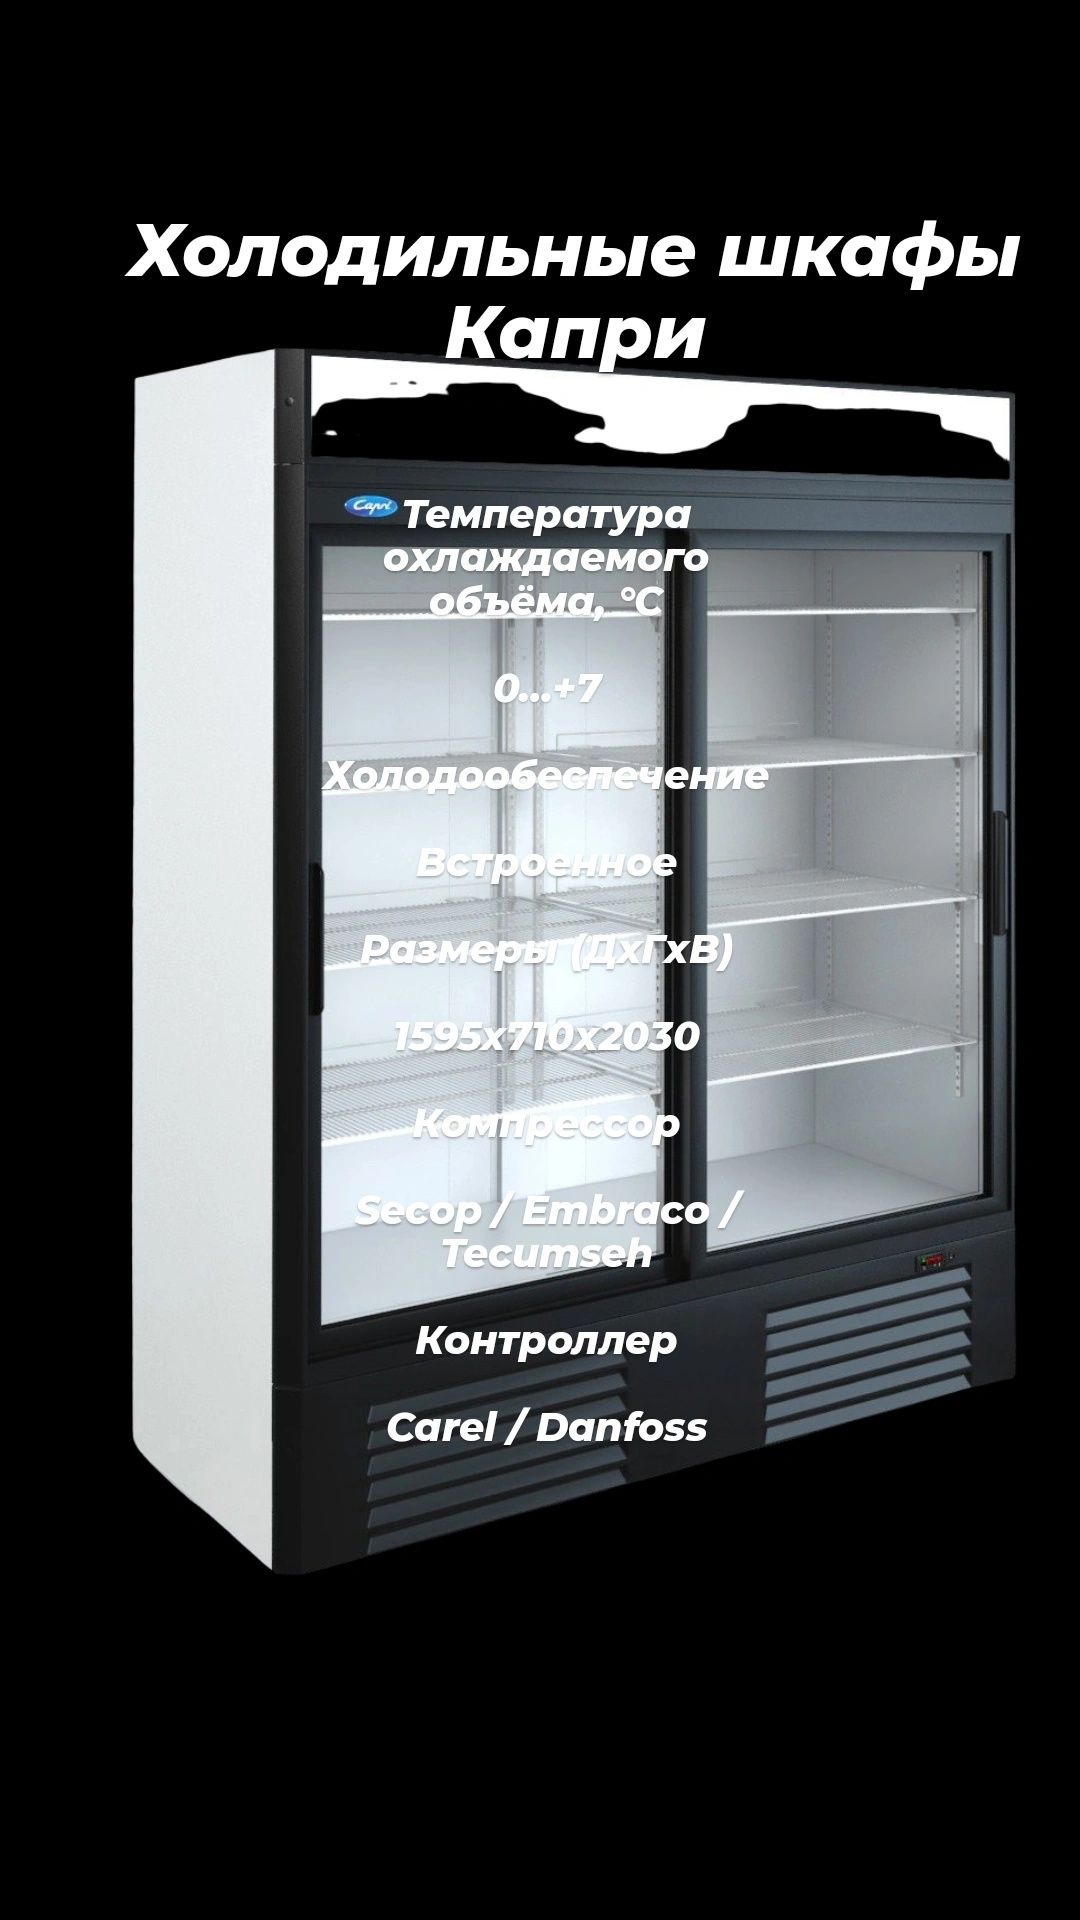 Холодильные шкафы холодильник витрины Капри для магазина ресторана